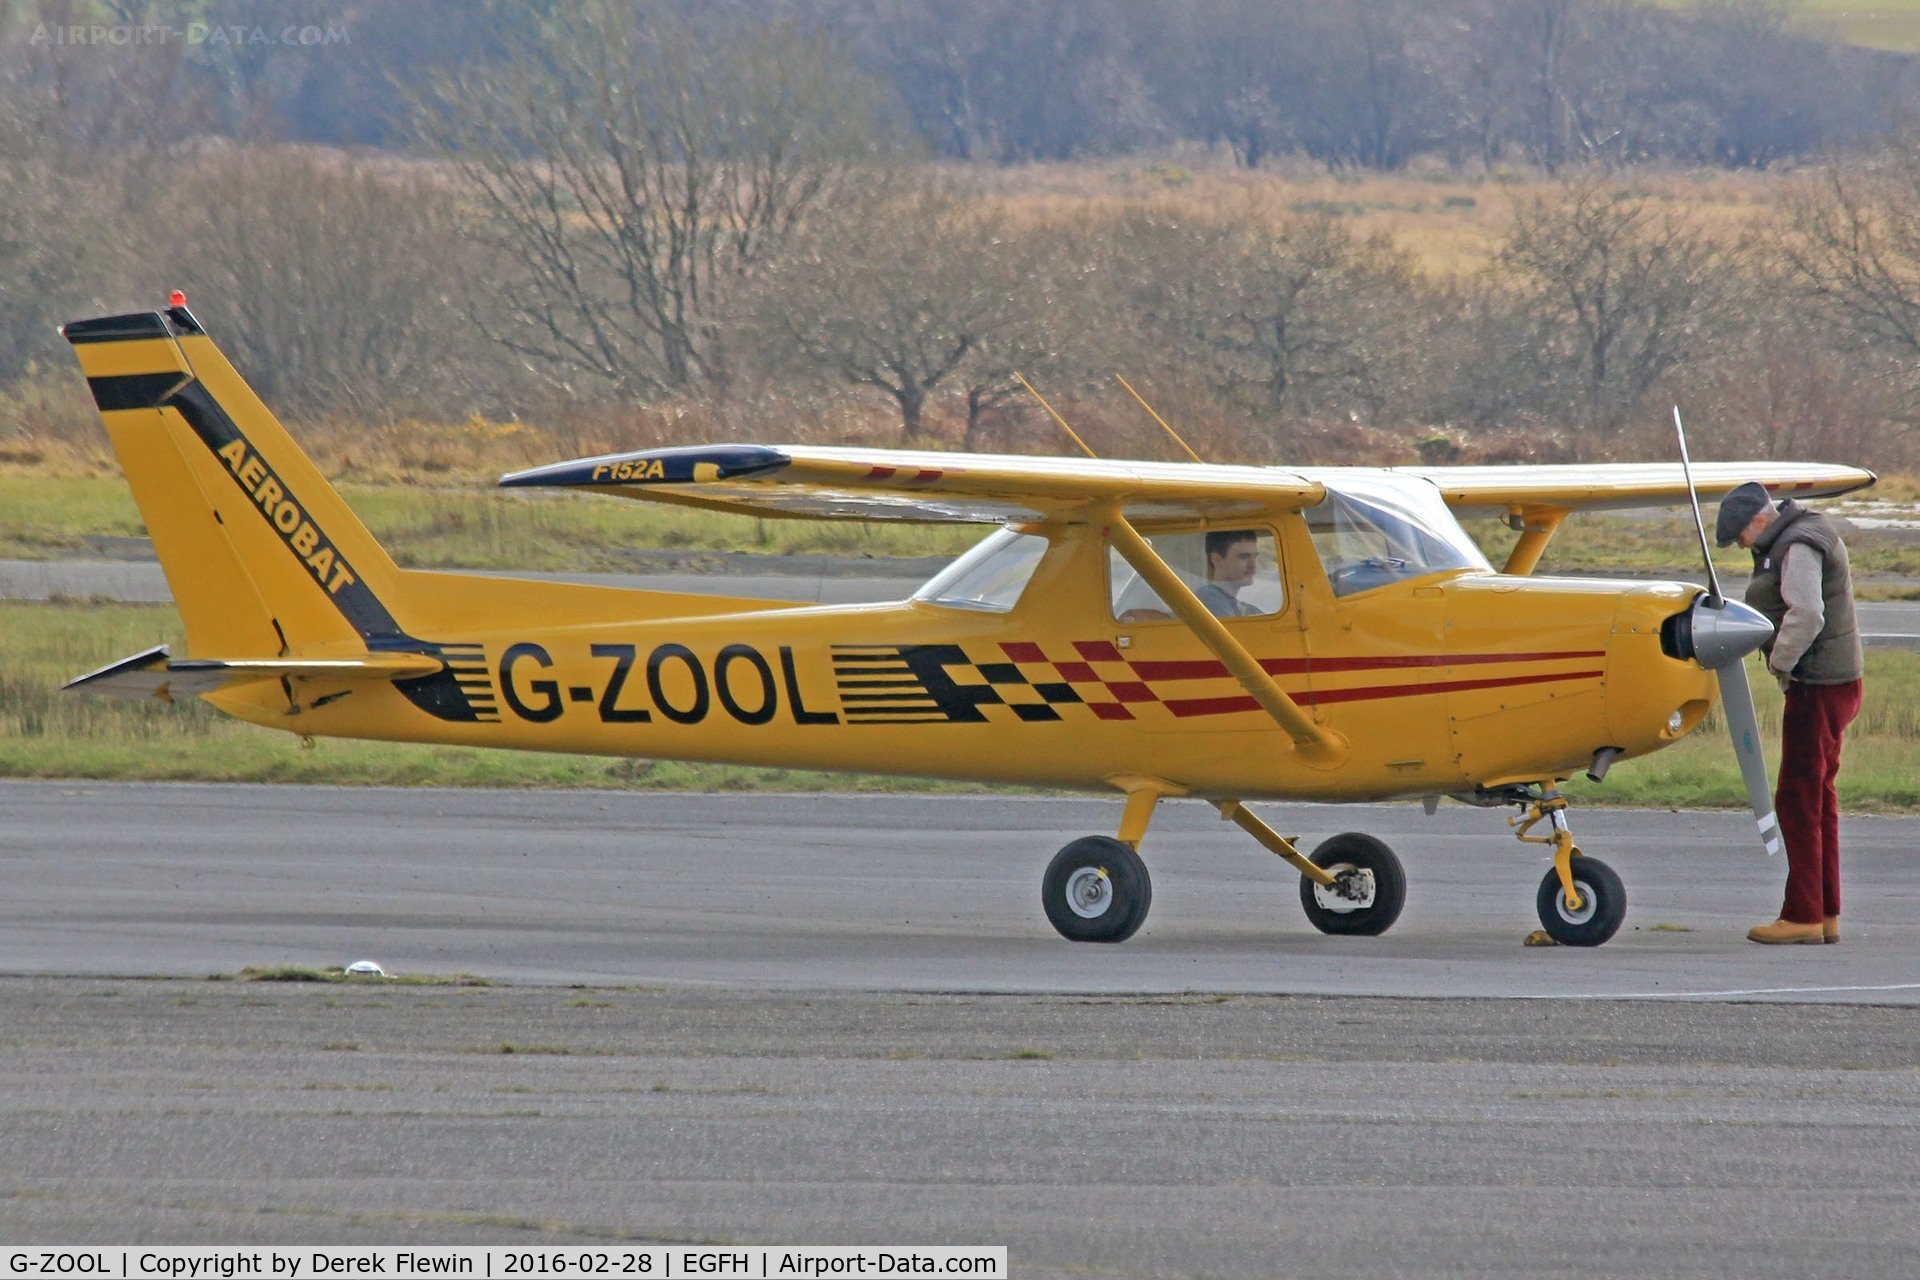 G-ZOOL, 1979 Reims FA152 Aerobat C/N 0357, Aerobat, Turweston based, previously G-BGXZ, parked up.